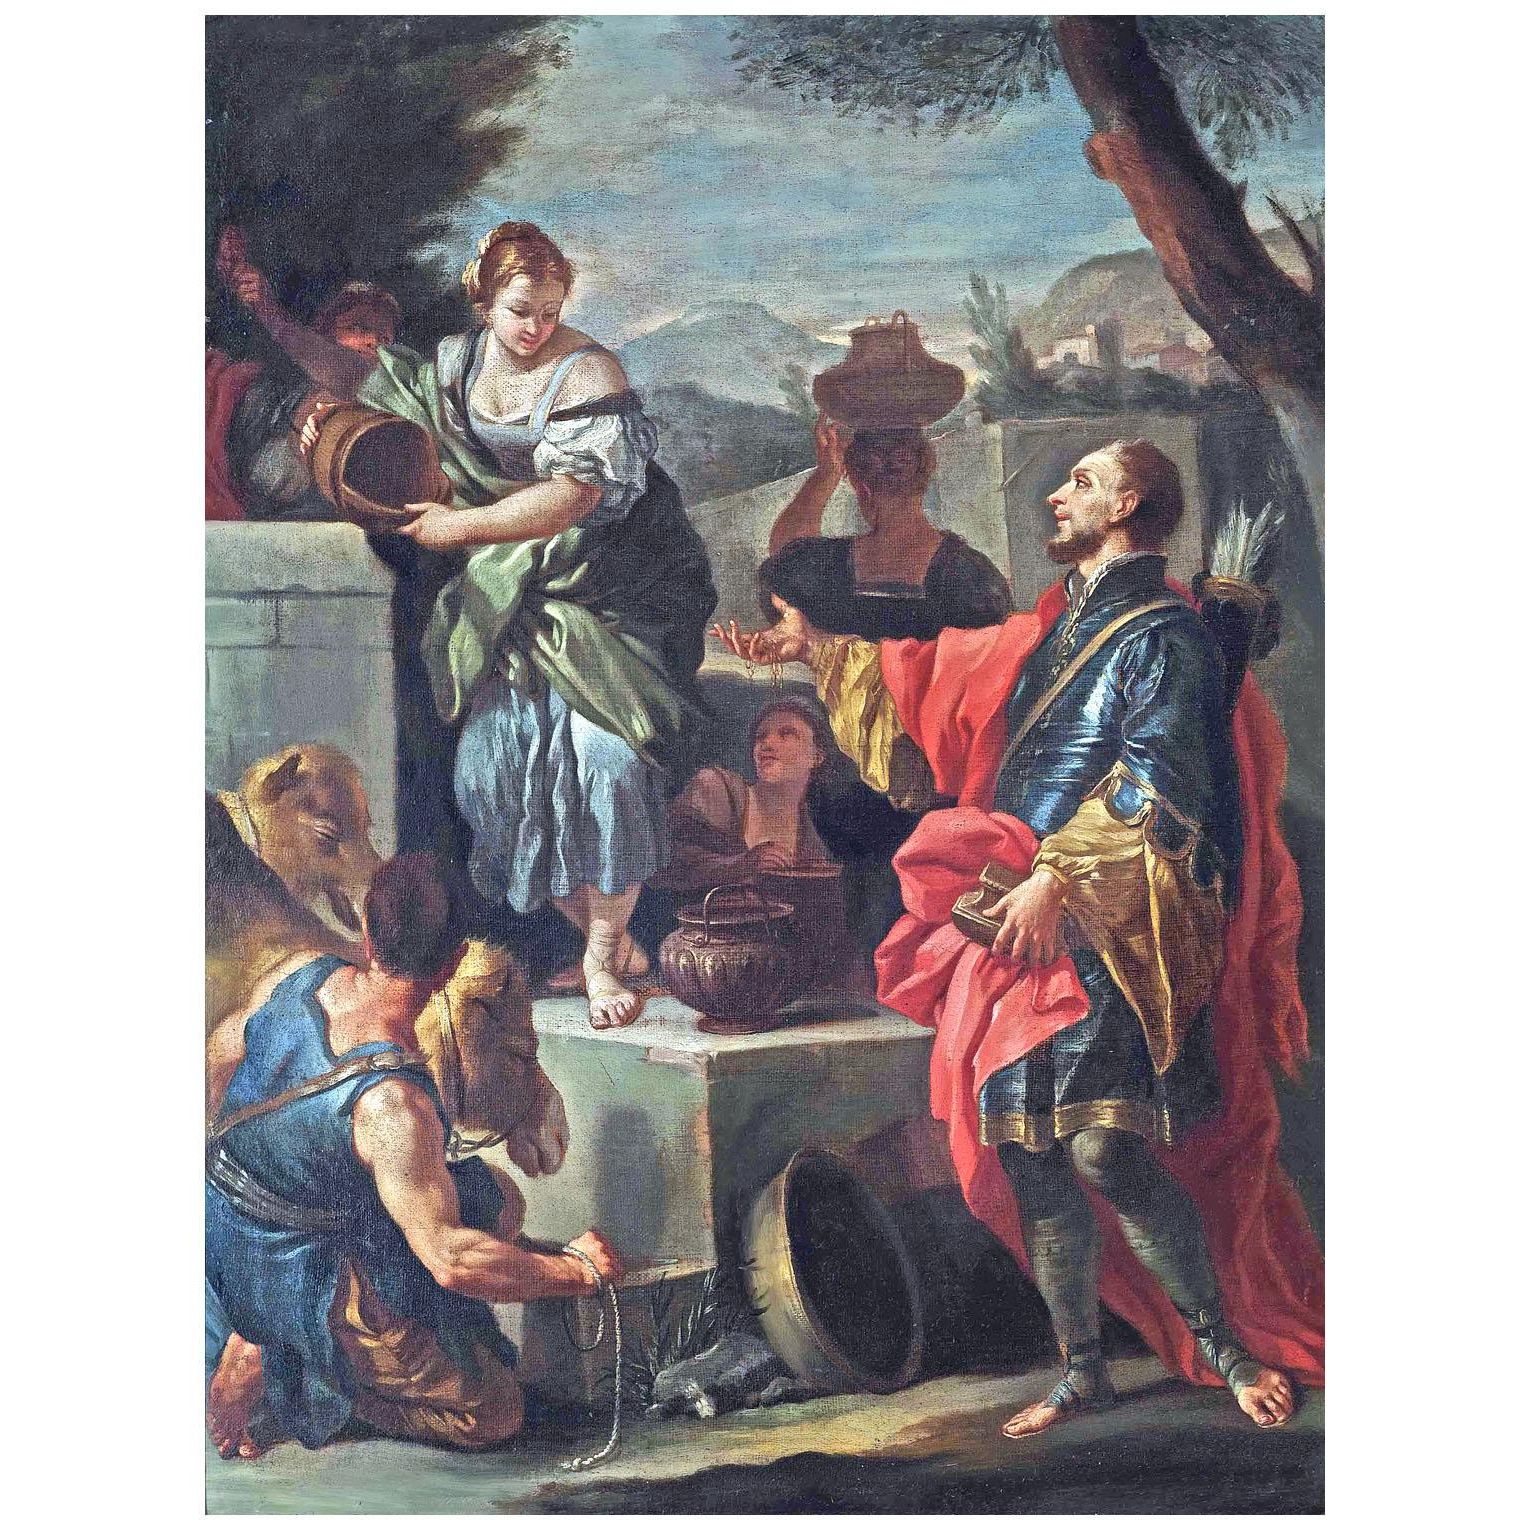 Francesco Solimena. Rebecca al pozzo. 1700. Hermitage Museum